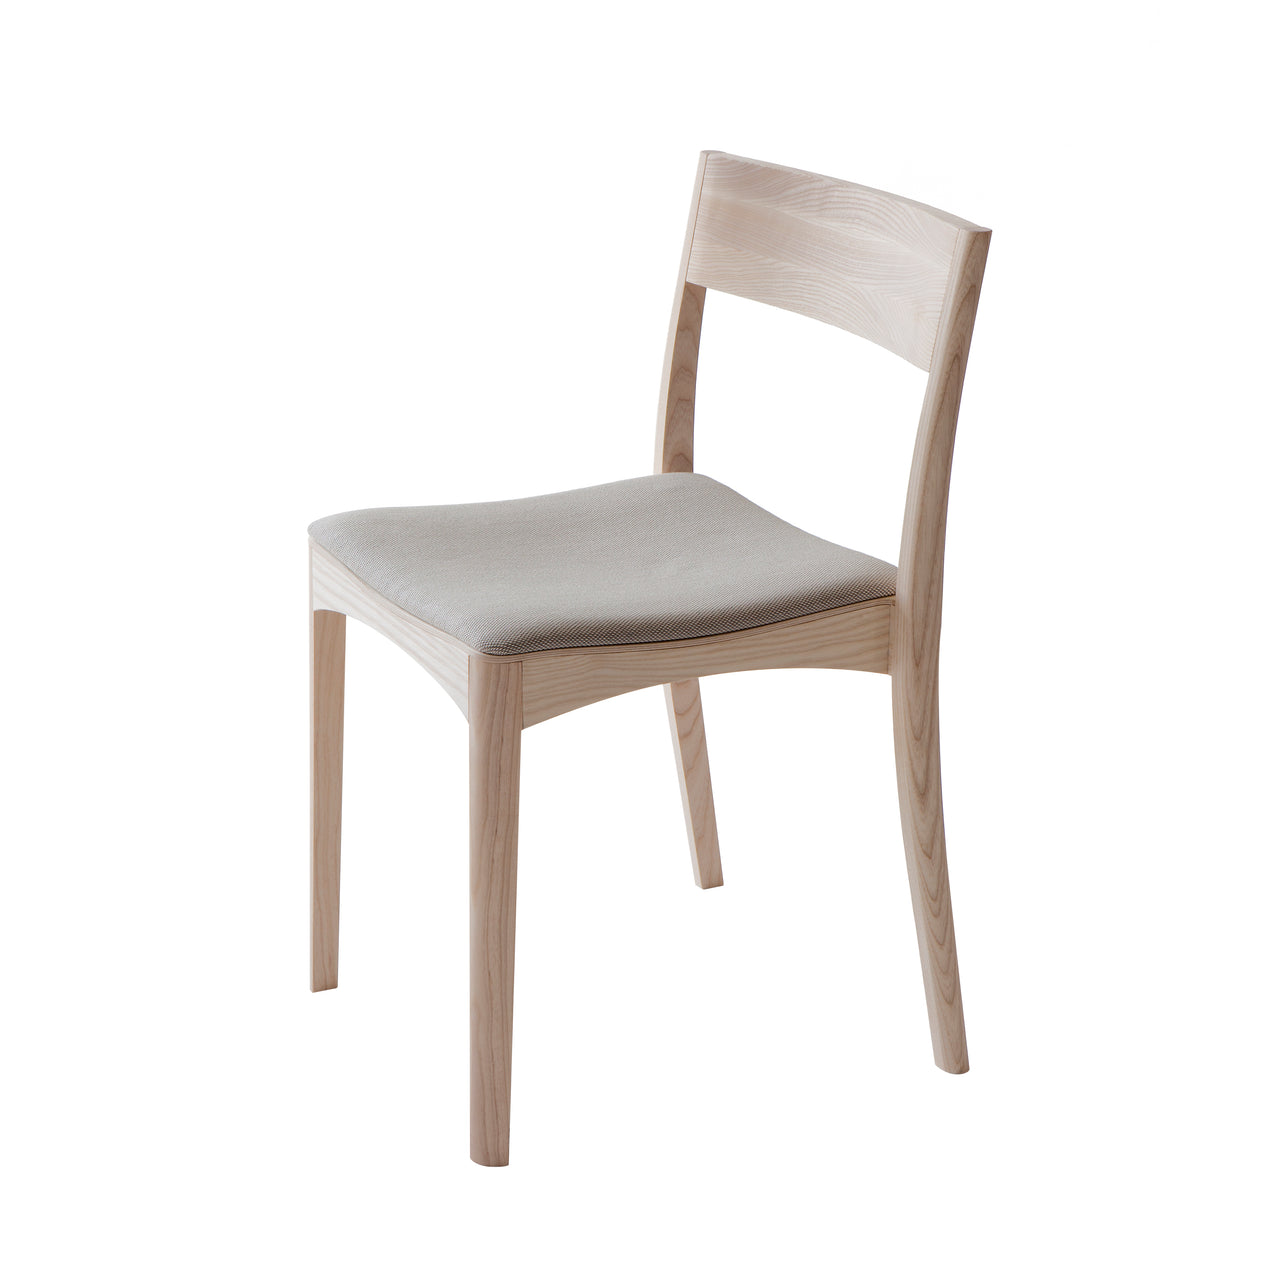 October Light Chair: Upholstered + Ash